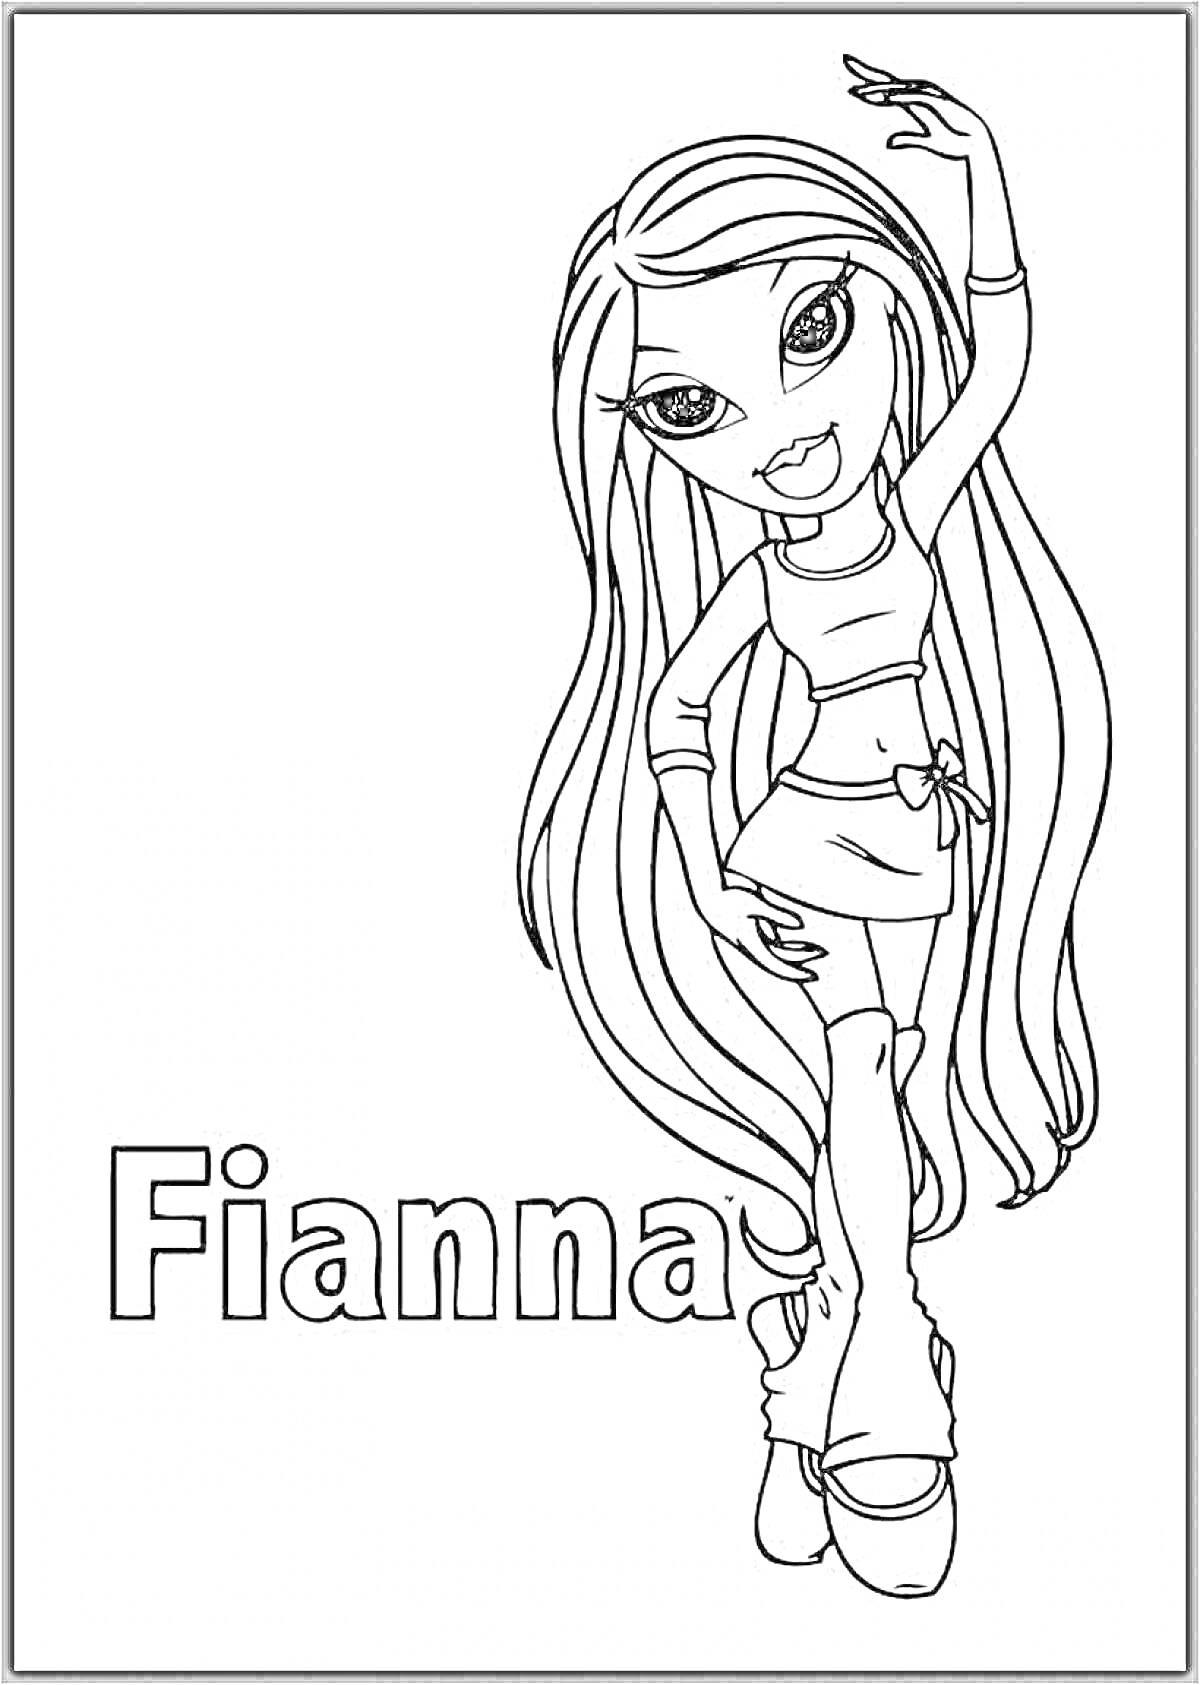 Fianna из Братц с длинными волосами, стоящая с поднятой рукой